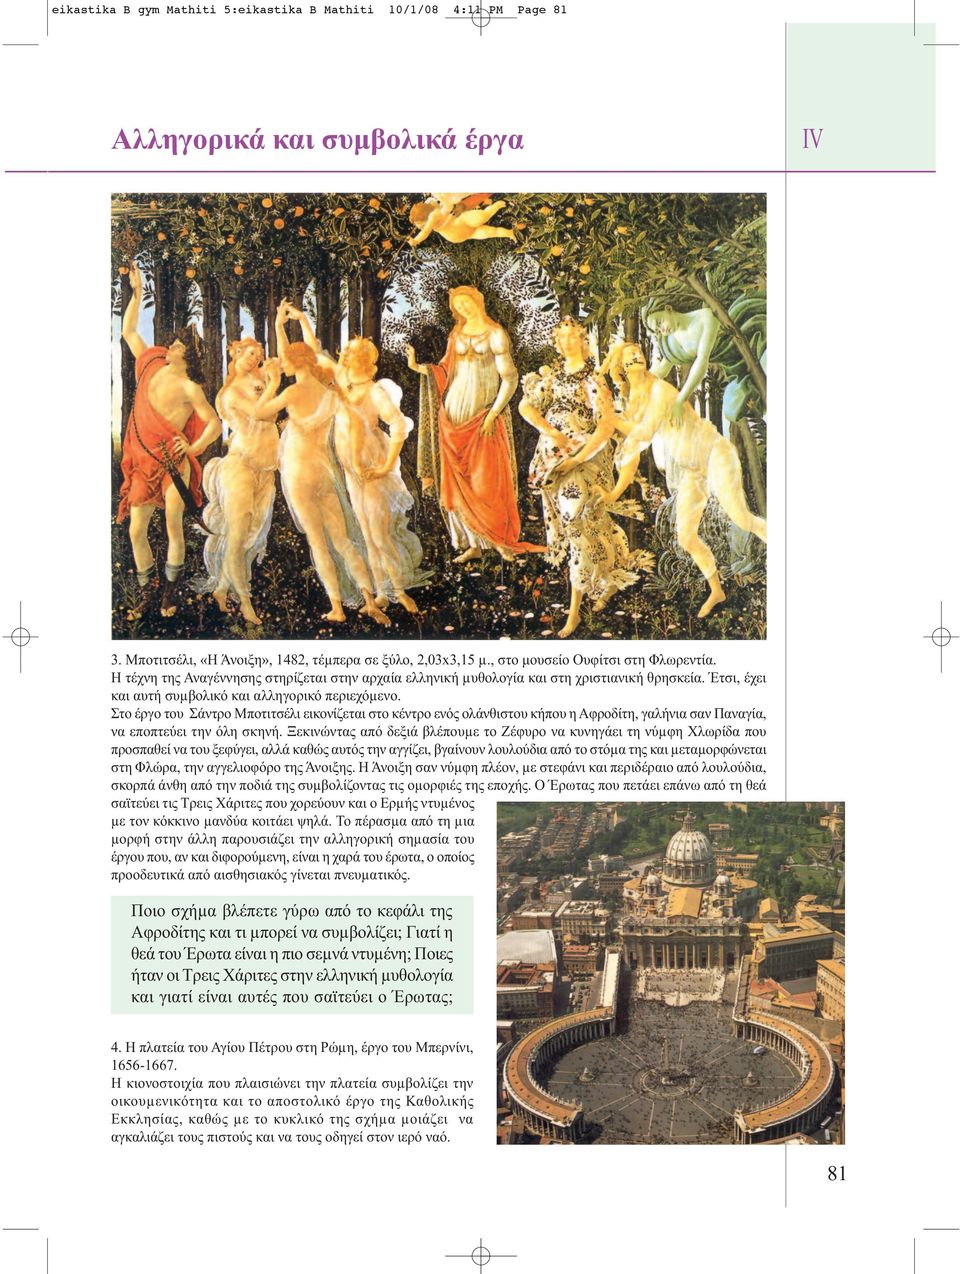 Στο έργο του Σάντρο Μποτιτσέλι εικονίζεται στο κέντρο ενός ολάνθιστου κήπου η Αφροδίτη, γαλήνια σαν Παναγία, να εποπτεύει την όλη σκηνή.